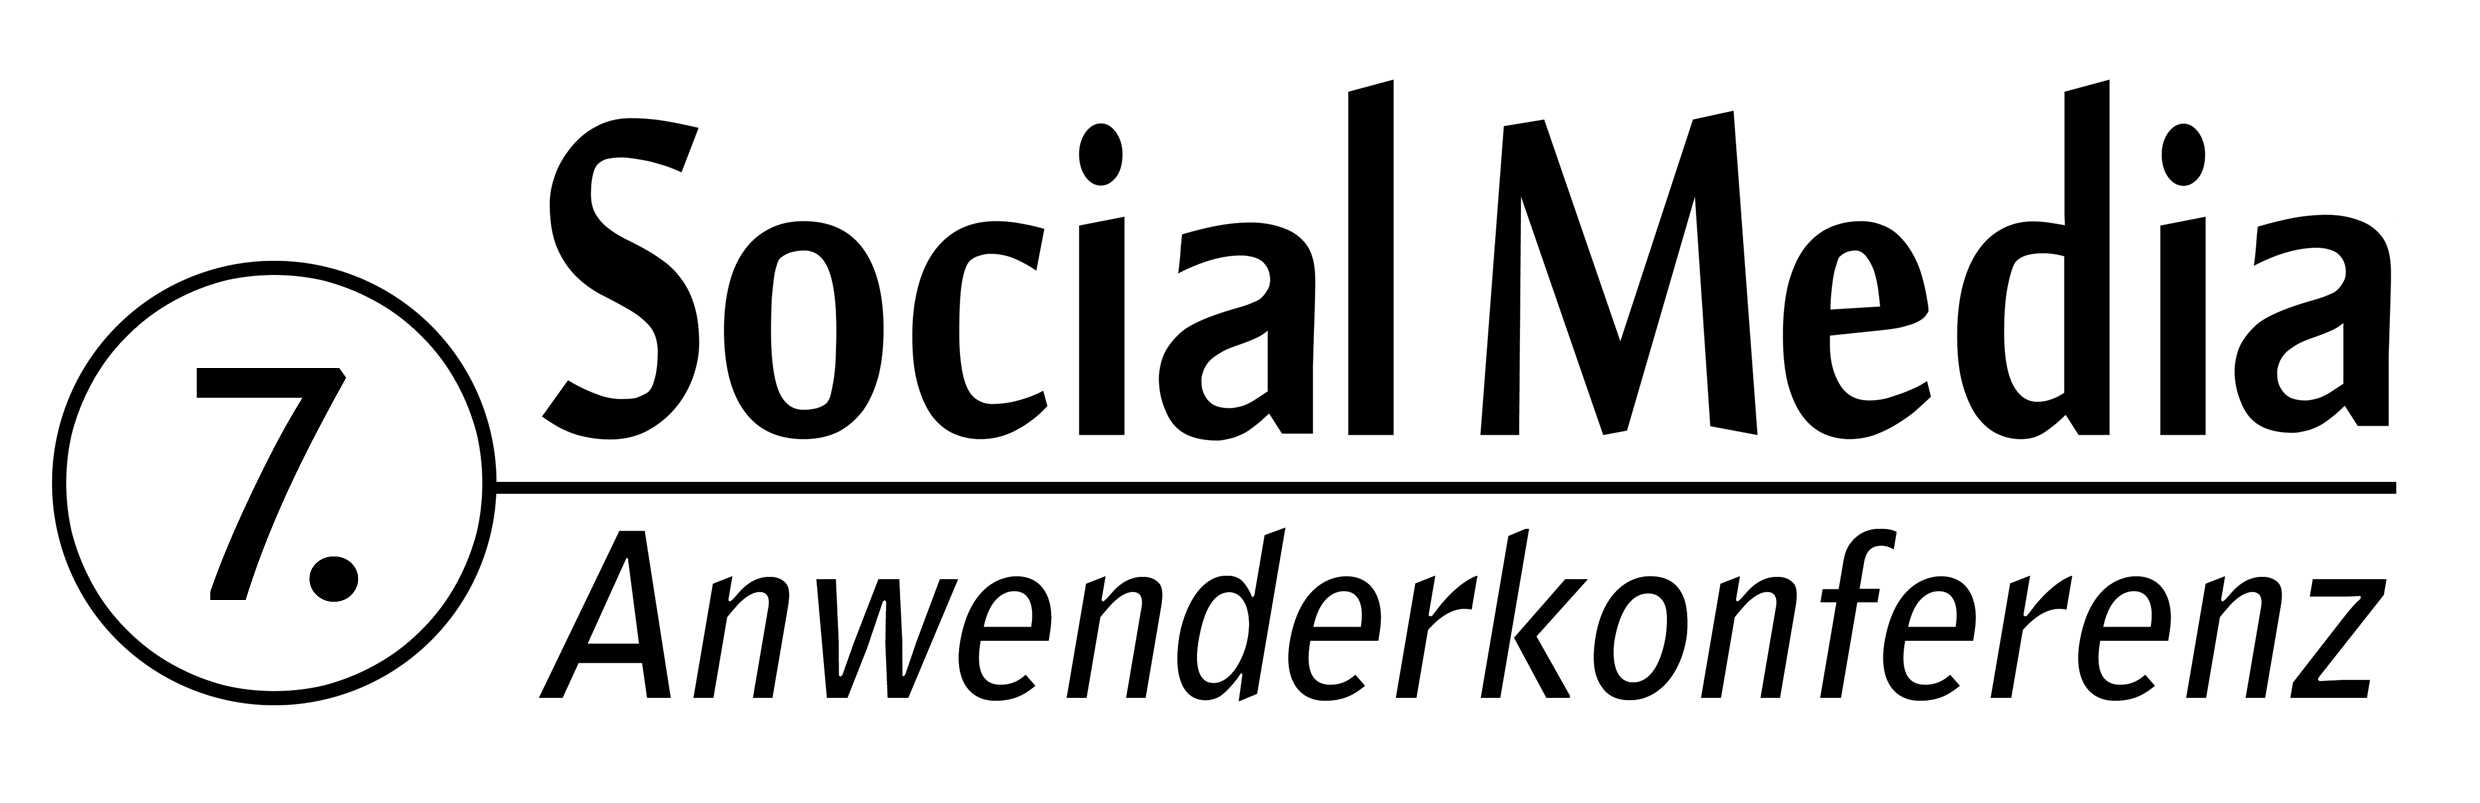 7. Social Media Anwenderkonferenz, 4. September 2014 in der FH Köln